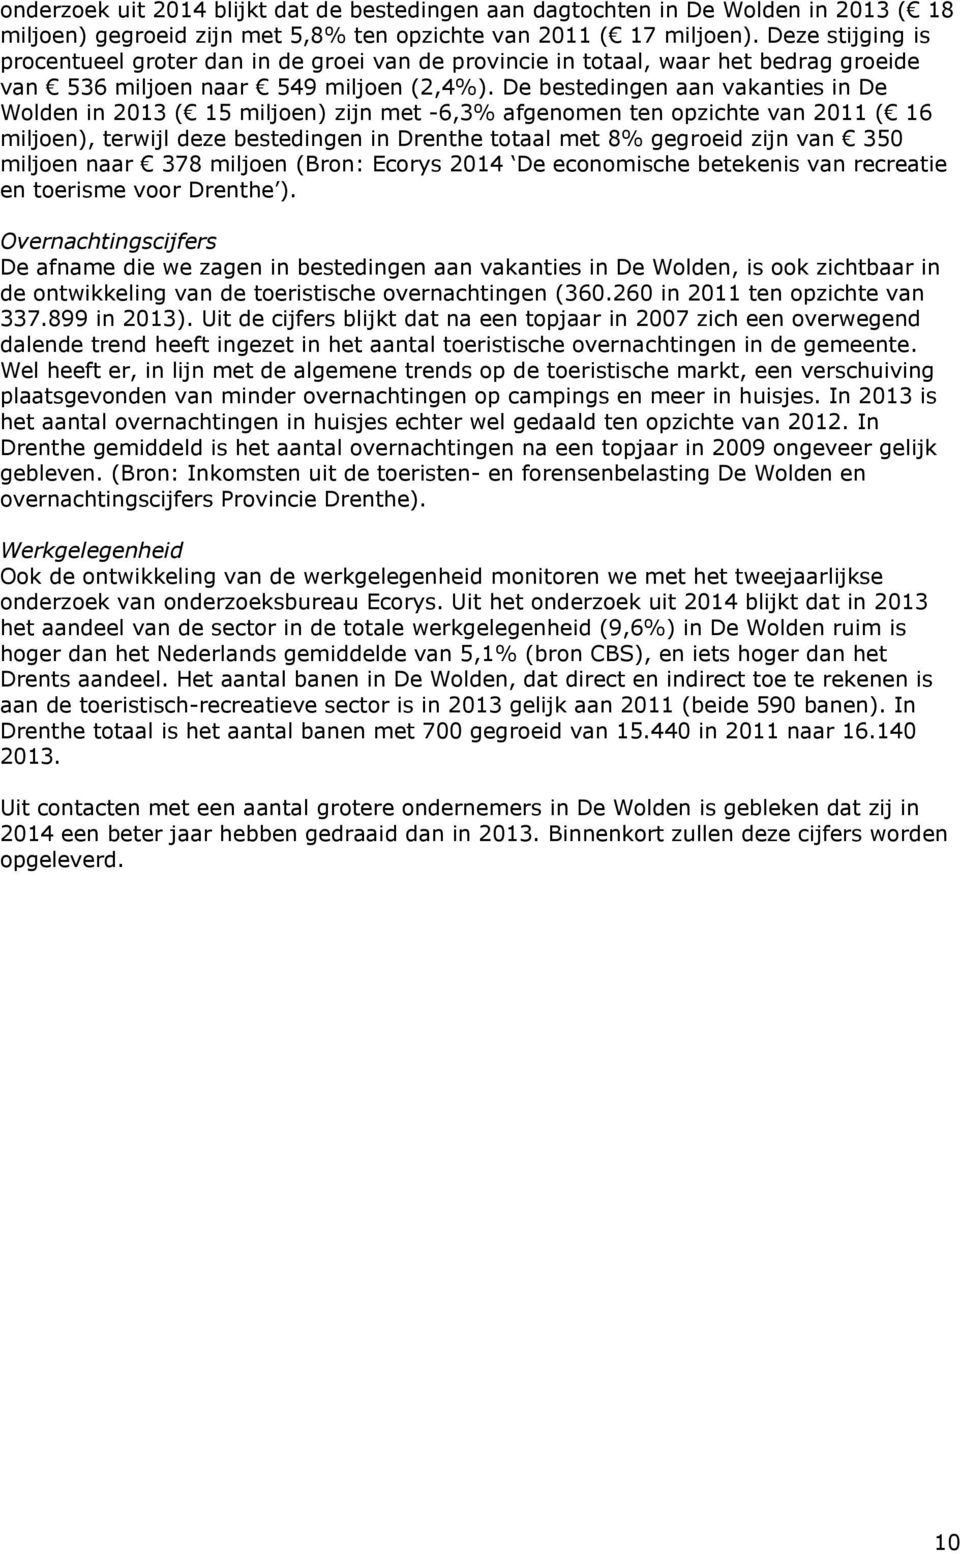 De bestedingen aan vakanties in De Wolden in 2013 ( 15 miljoen) zijn met -6,3% afgenomen ten opzichte van 2011 ( 16 miljoen), terwijl deze bestedingen in Drenthe totaal met 8% gegroeid zijn van 350